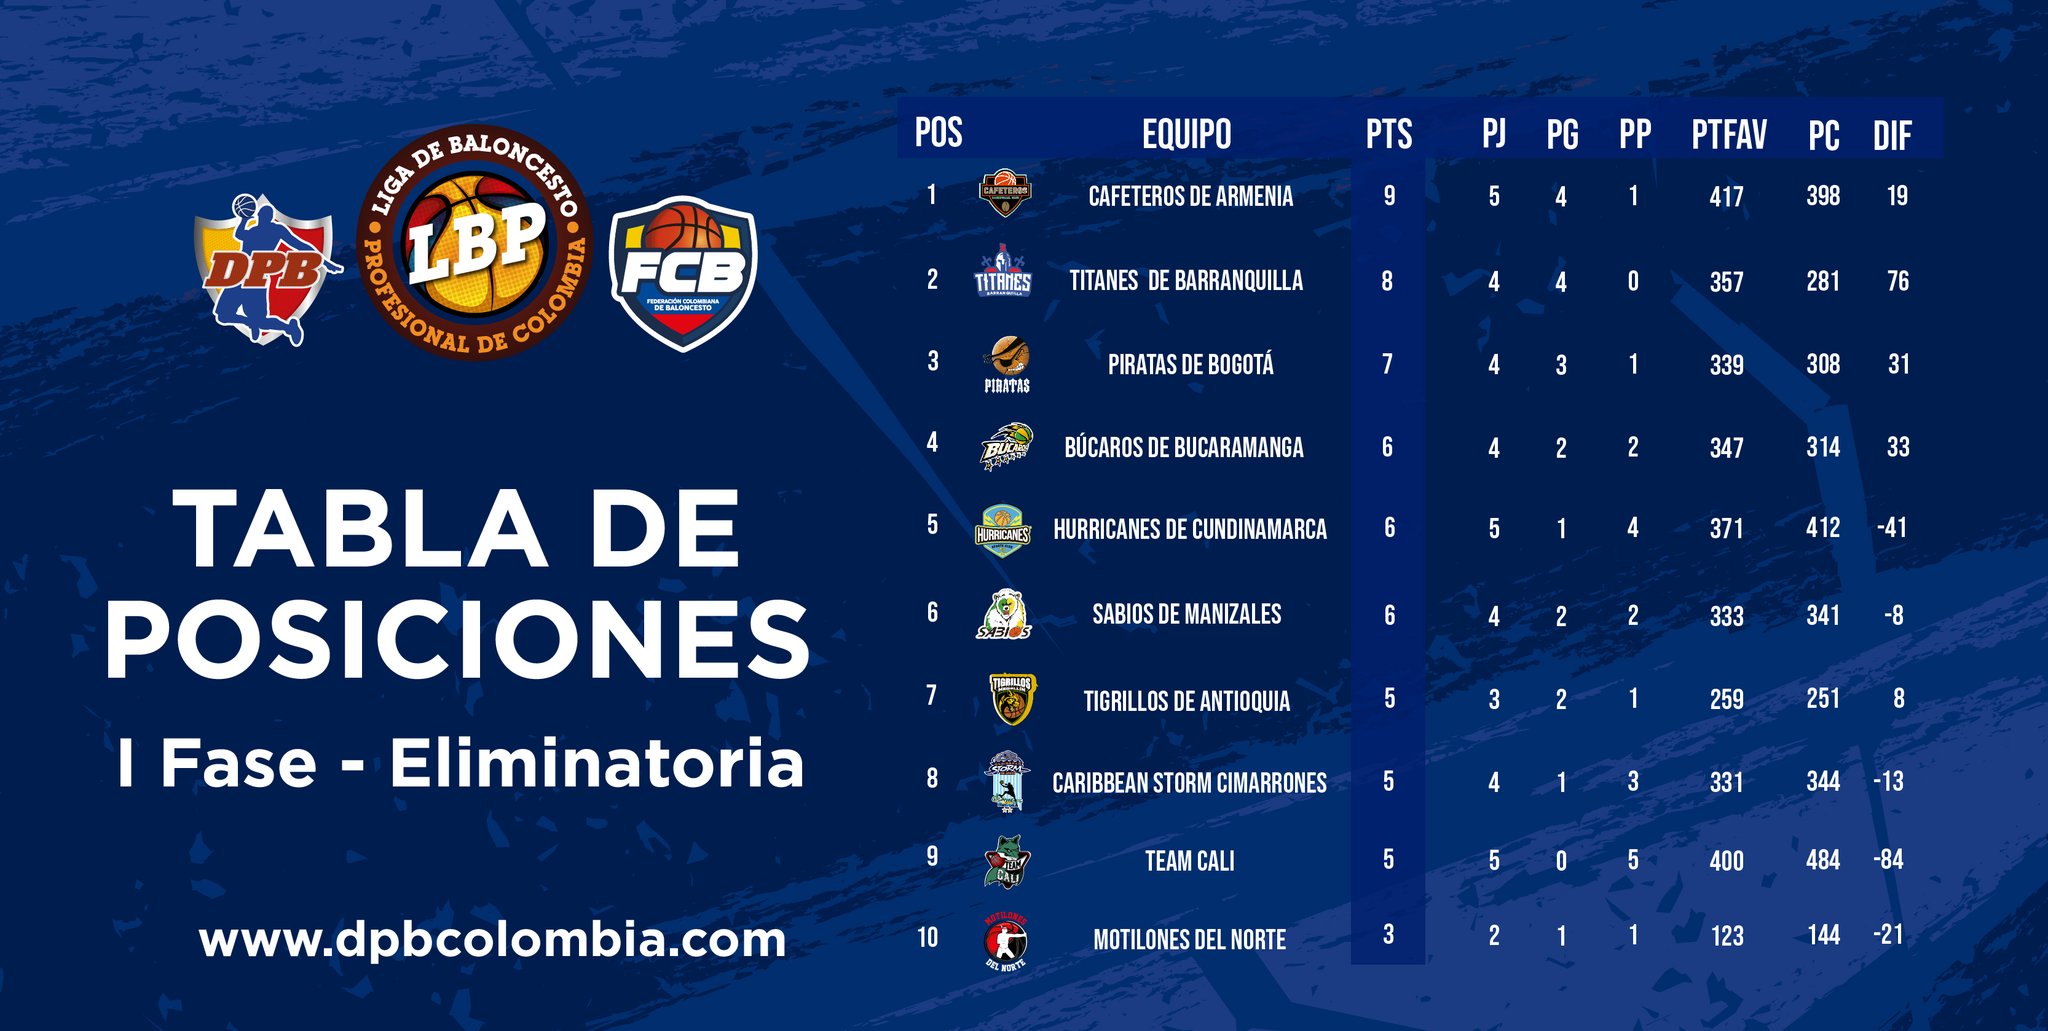 DPB Colombia on Twitter: "#LBP2021-1 | ¡ASÍ ESTÁ LA TABLA DE POSICIONES 📈📉 Conoce la tabla posiciones de la Liga Profesional de en esta primera fase eliminatoria, en la cual